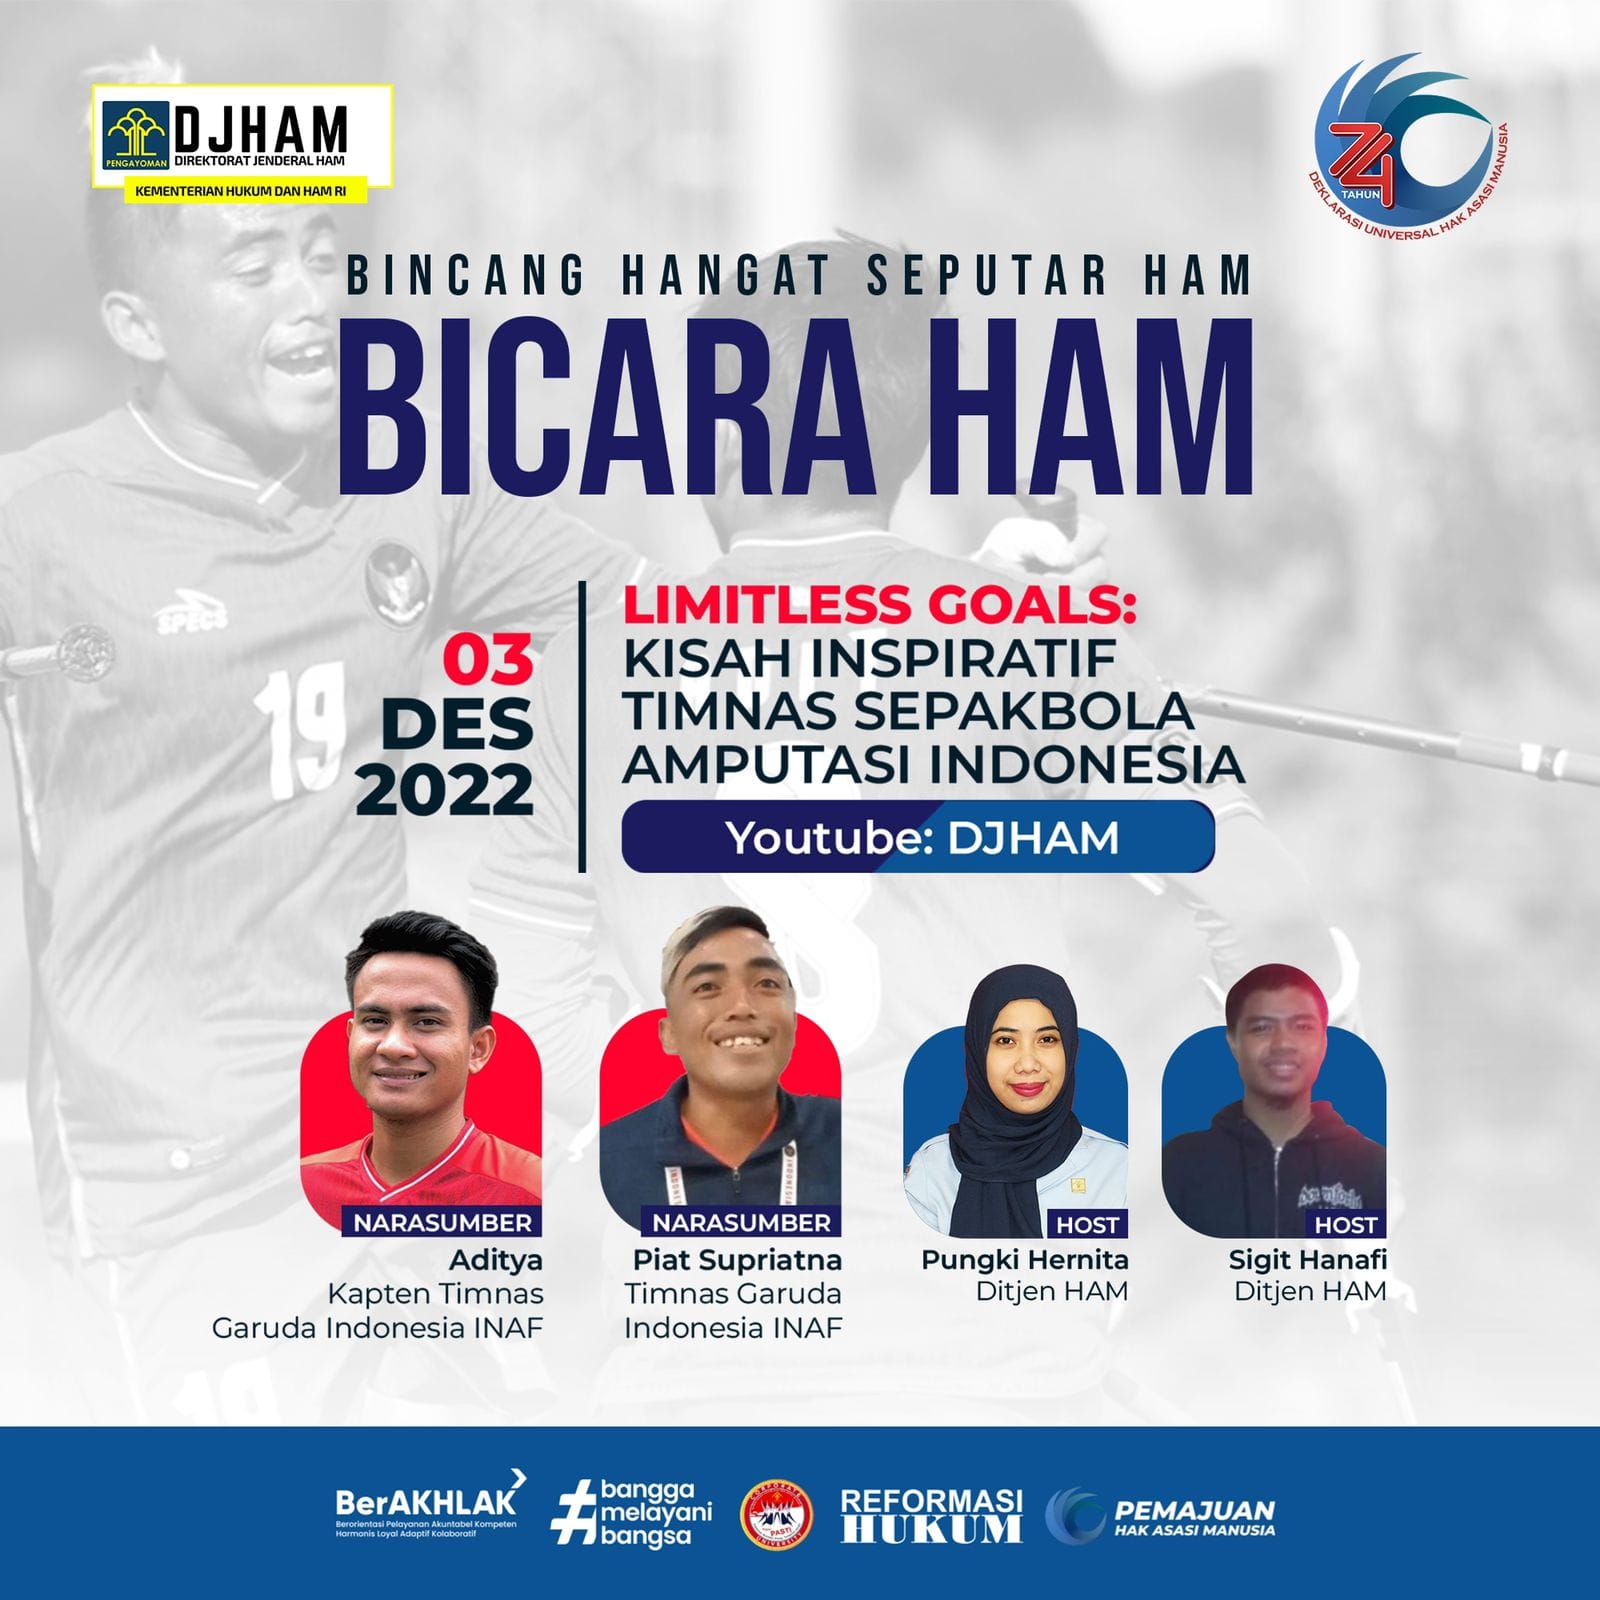 Bicara HAM “Limitless Goals: Kisah Inspiratif Timnas Sepakbola Amputasi Indonesia”